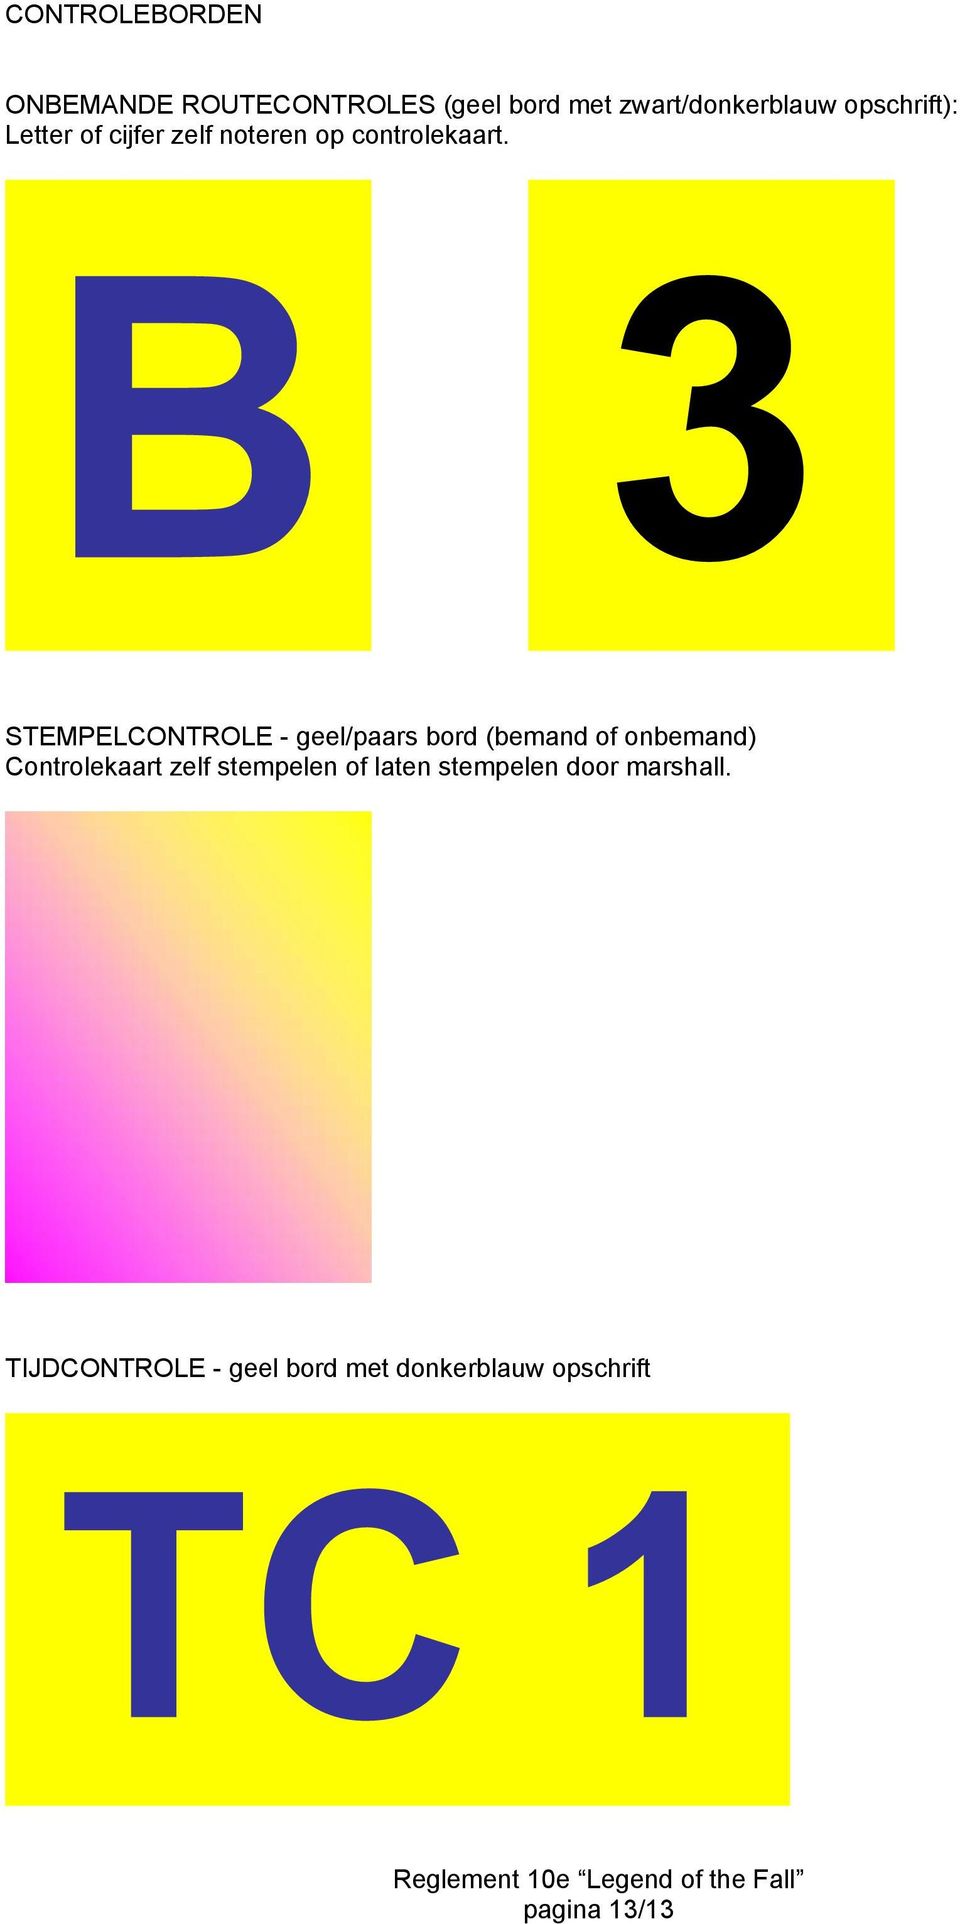 STEMPELCONTROLE - geel/paars bord (bemand of onbemand) Controlekaart zelf